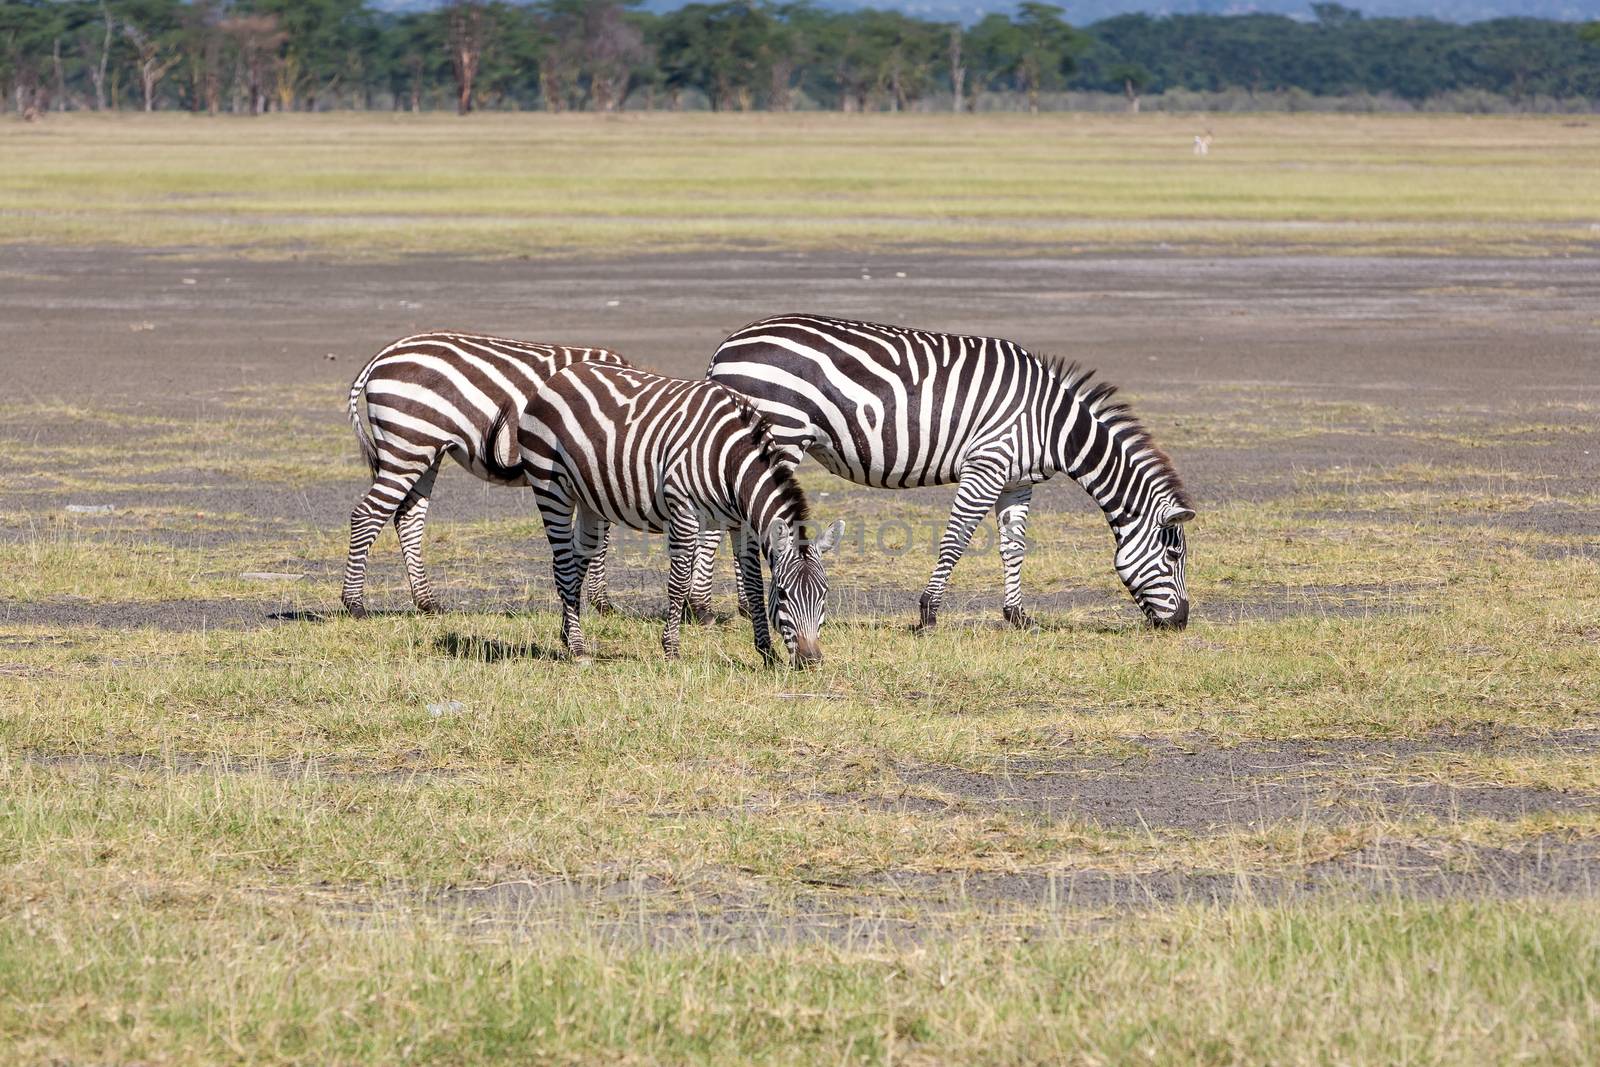 two zebras in the grasslands, Africa. Kenya